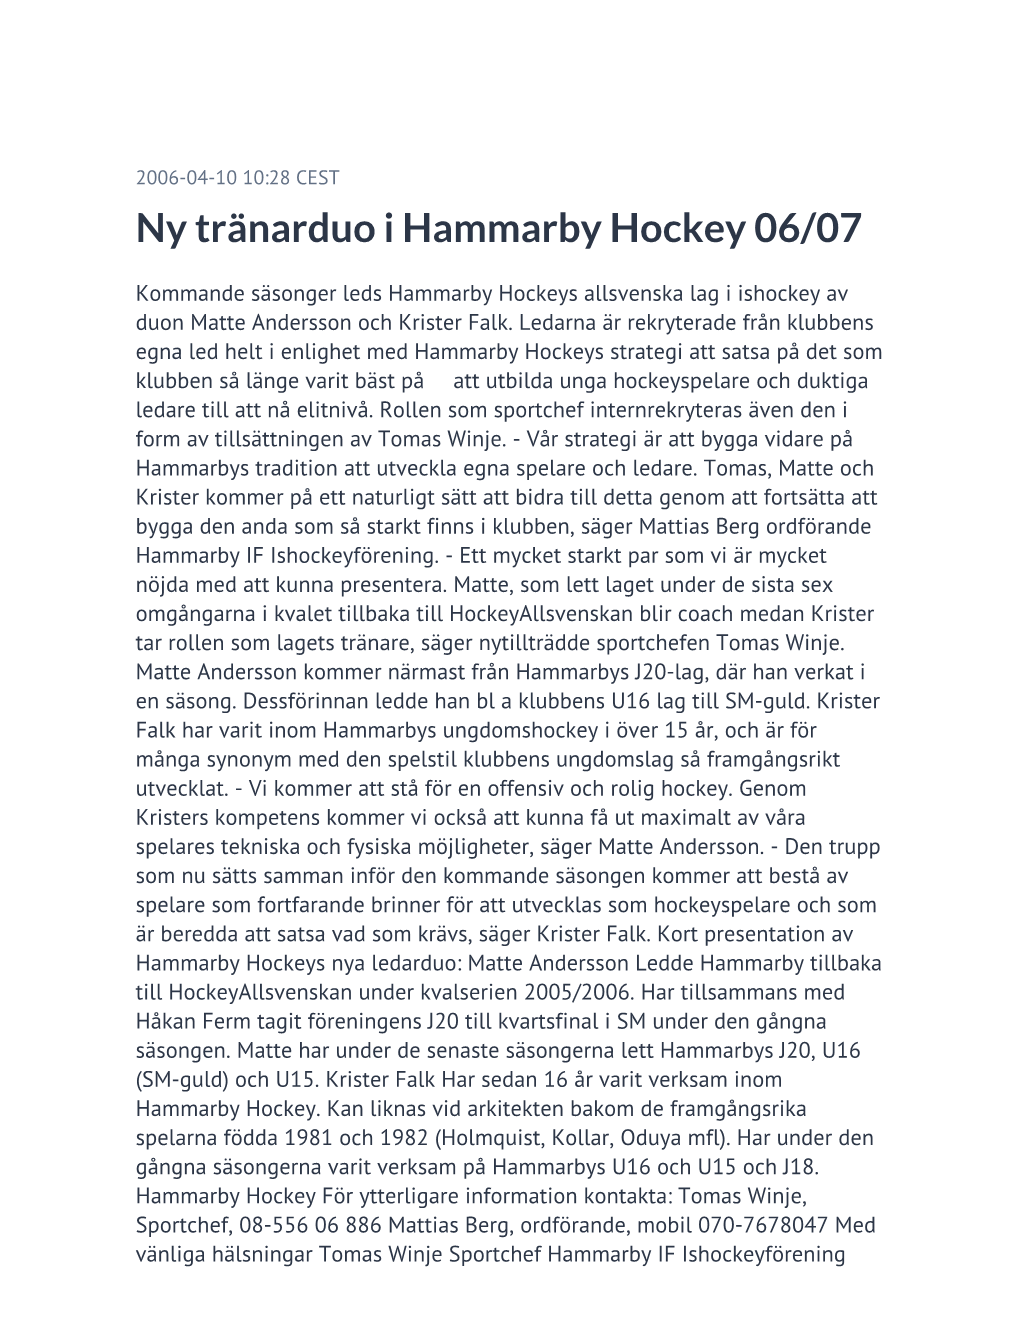 Ny Tränarduo I Hammarby Hockey 06/07